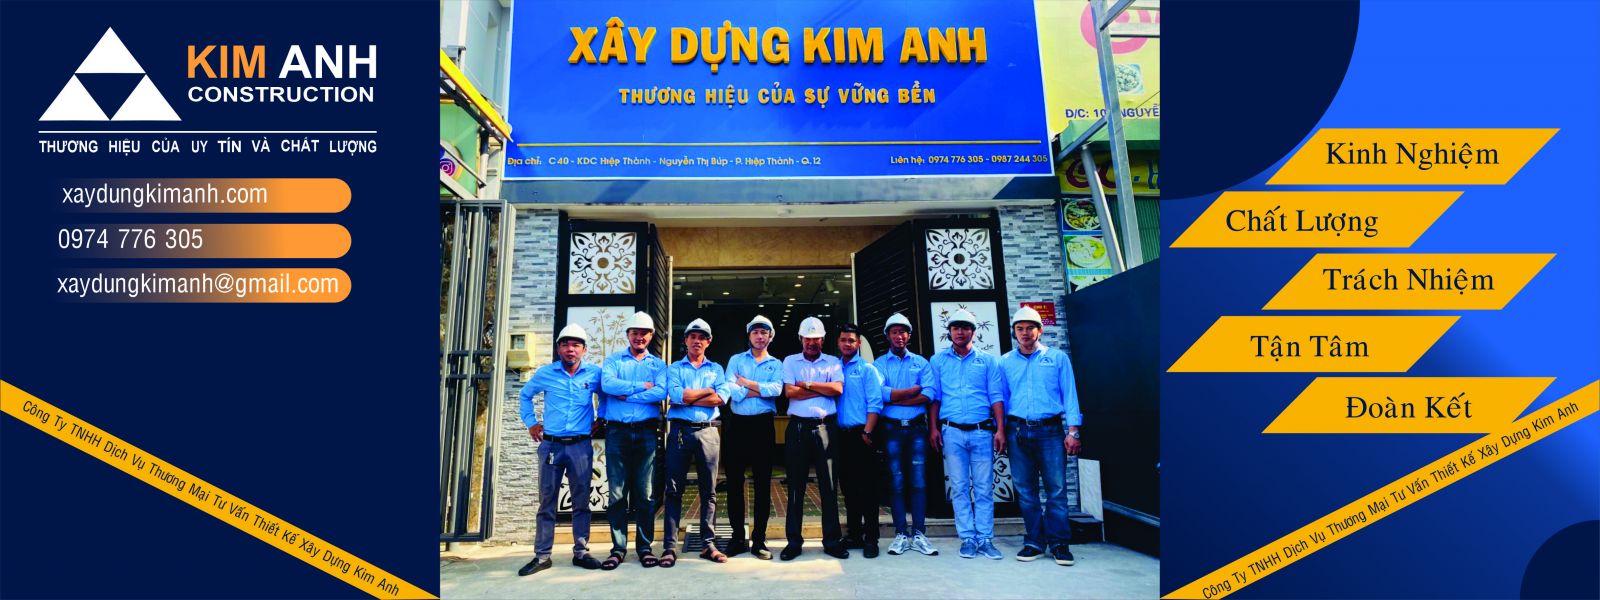 công ty xây dựng kim anh- xaydungkimanh.com